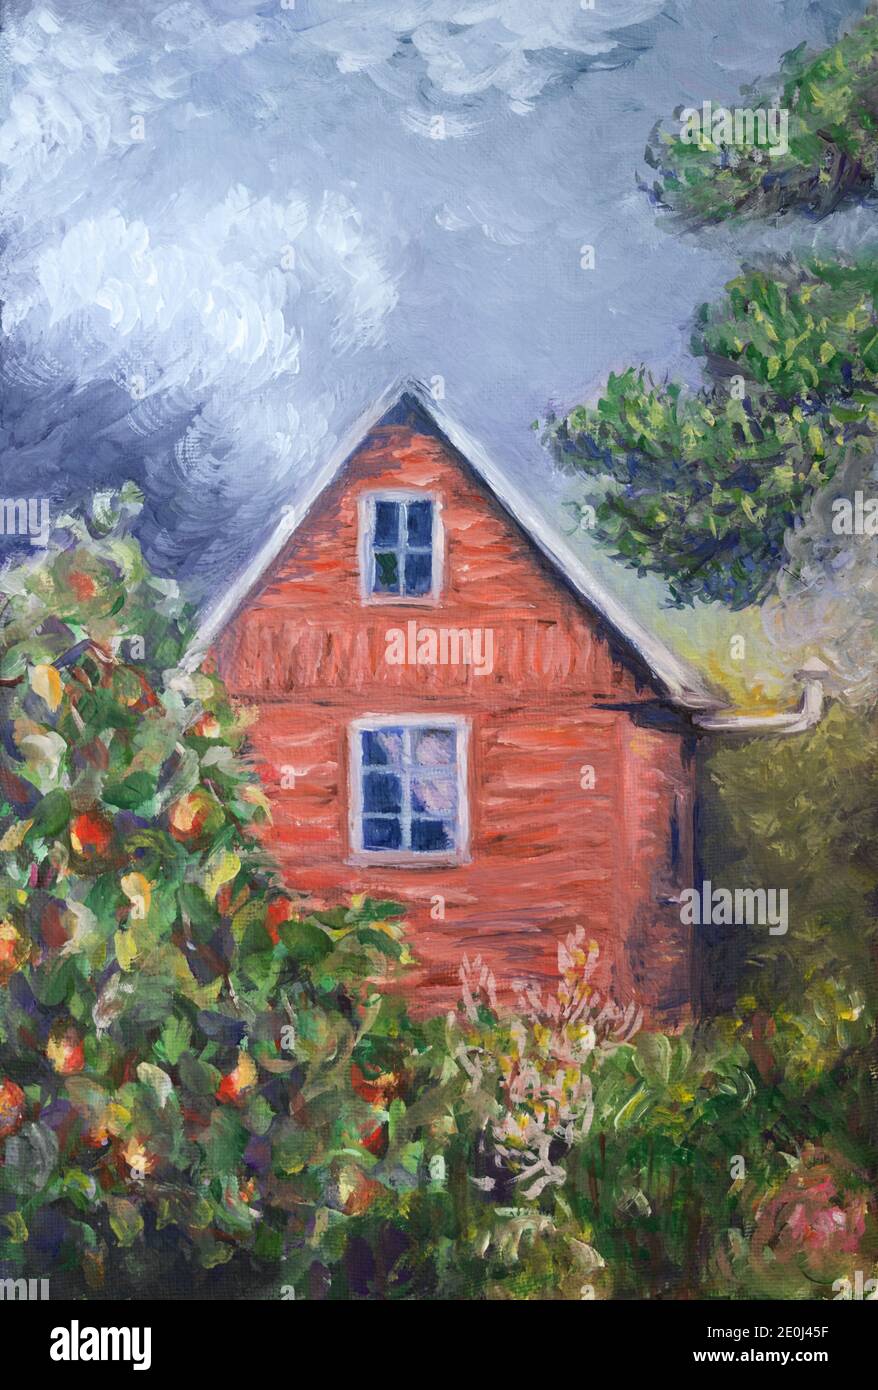 Petite maison en zone rurale. Peinture à la gouache sur toile Banque D'Images